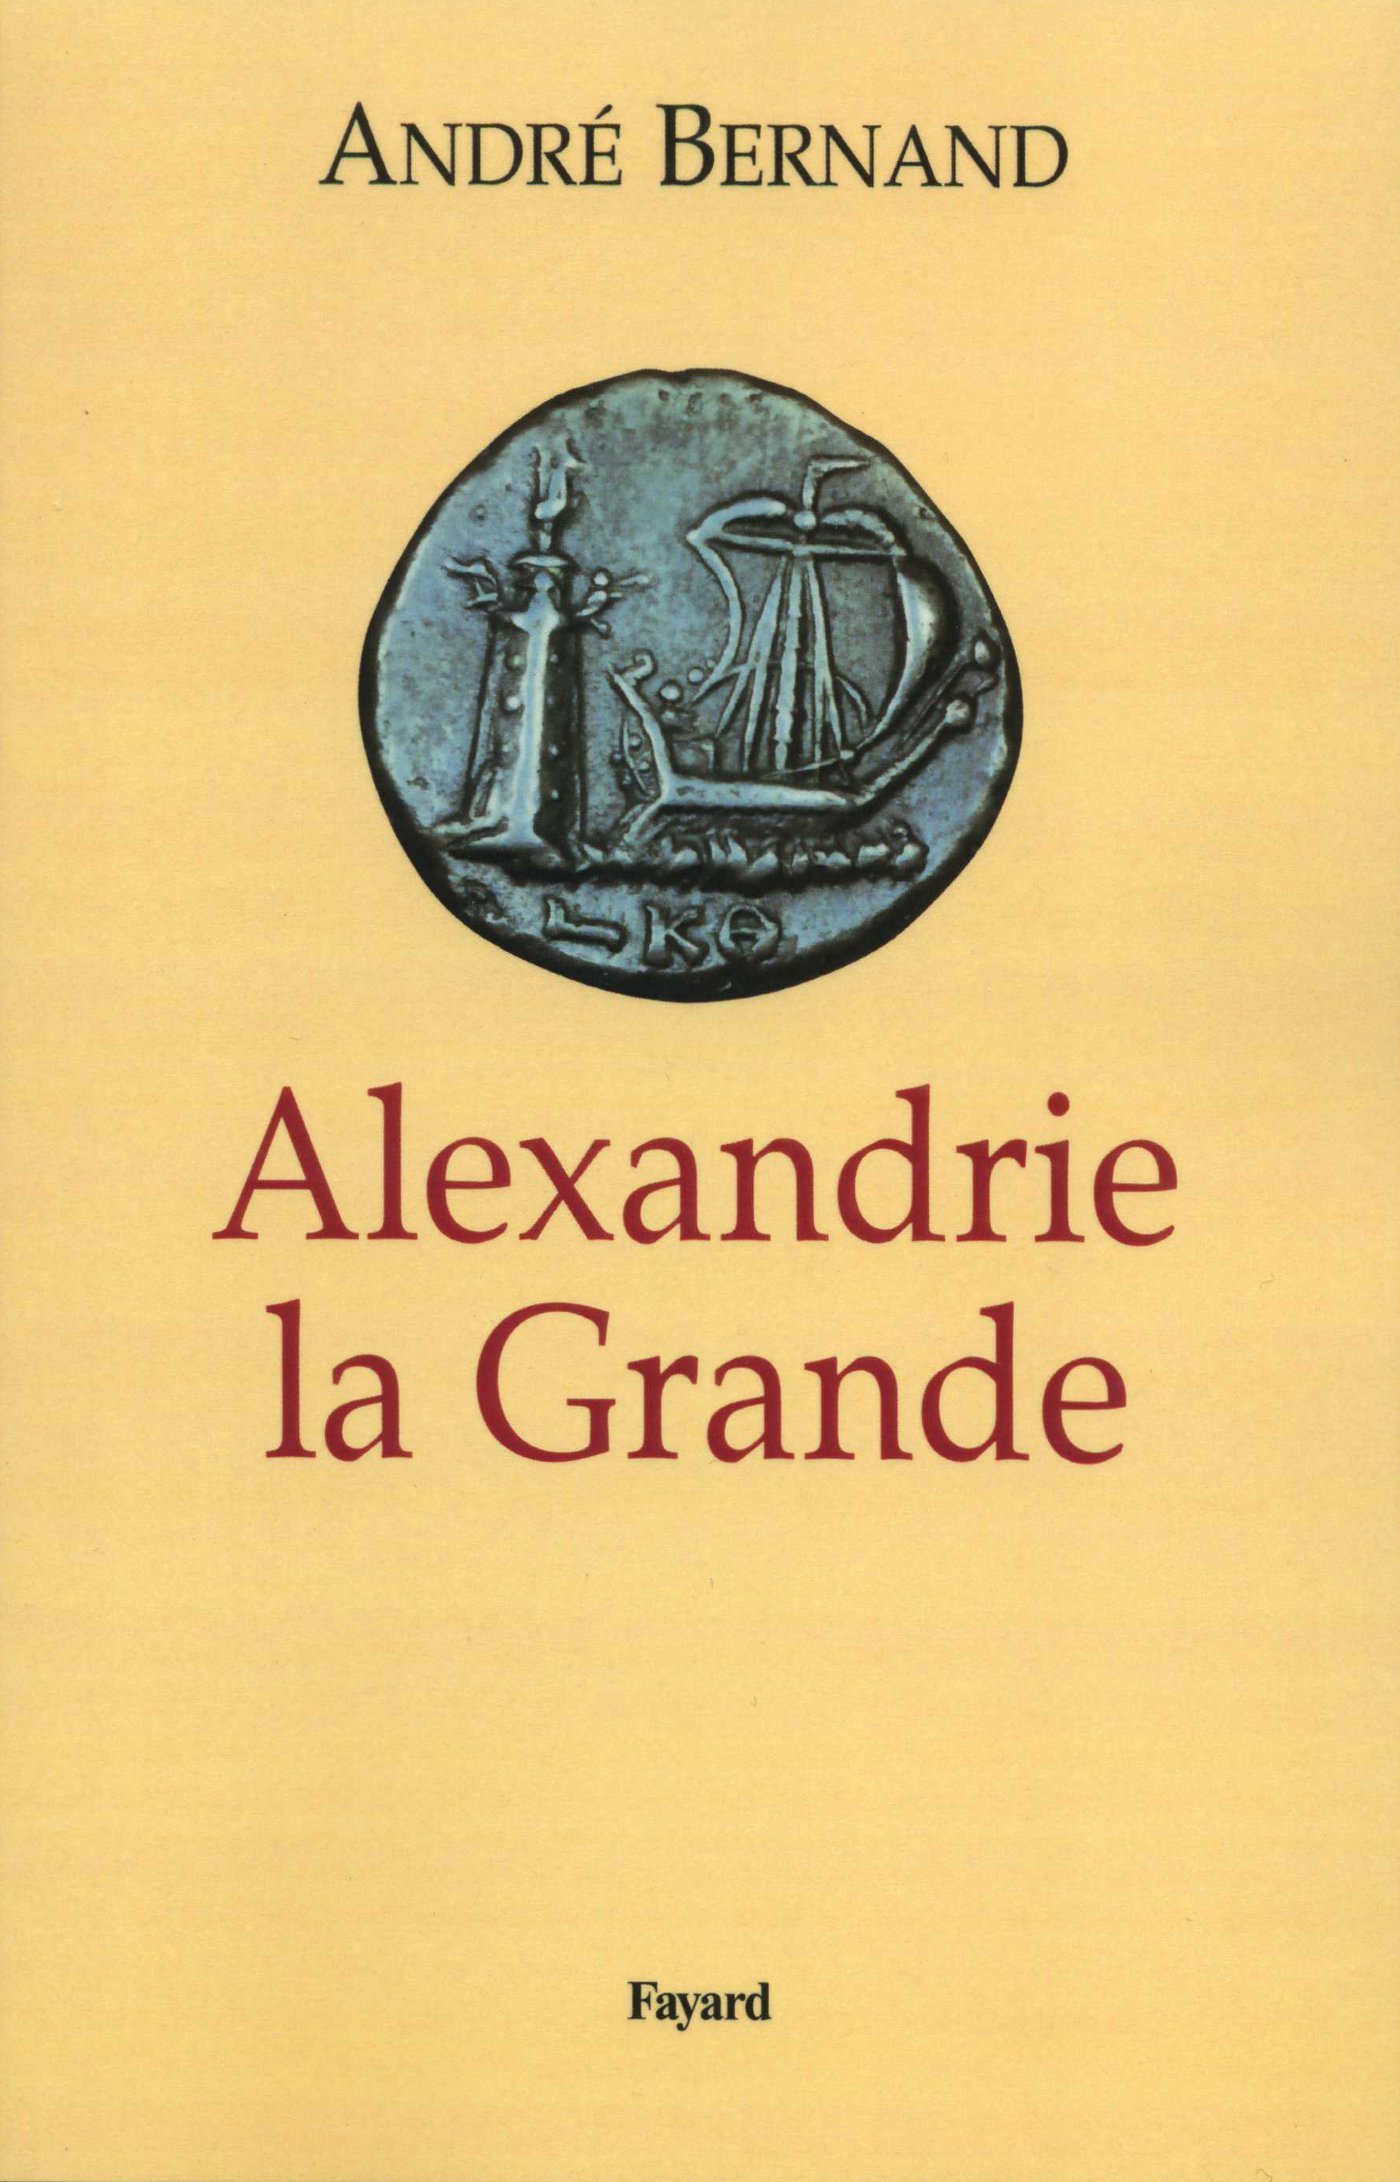 Alexandrie la Grande, 2012, nvlle éd., 430 p.